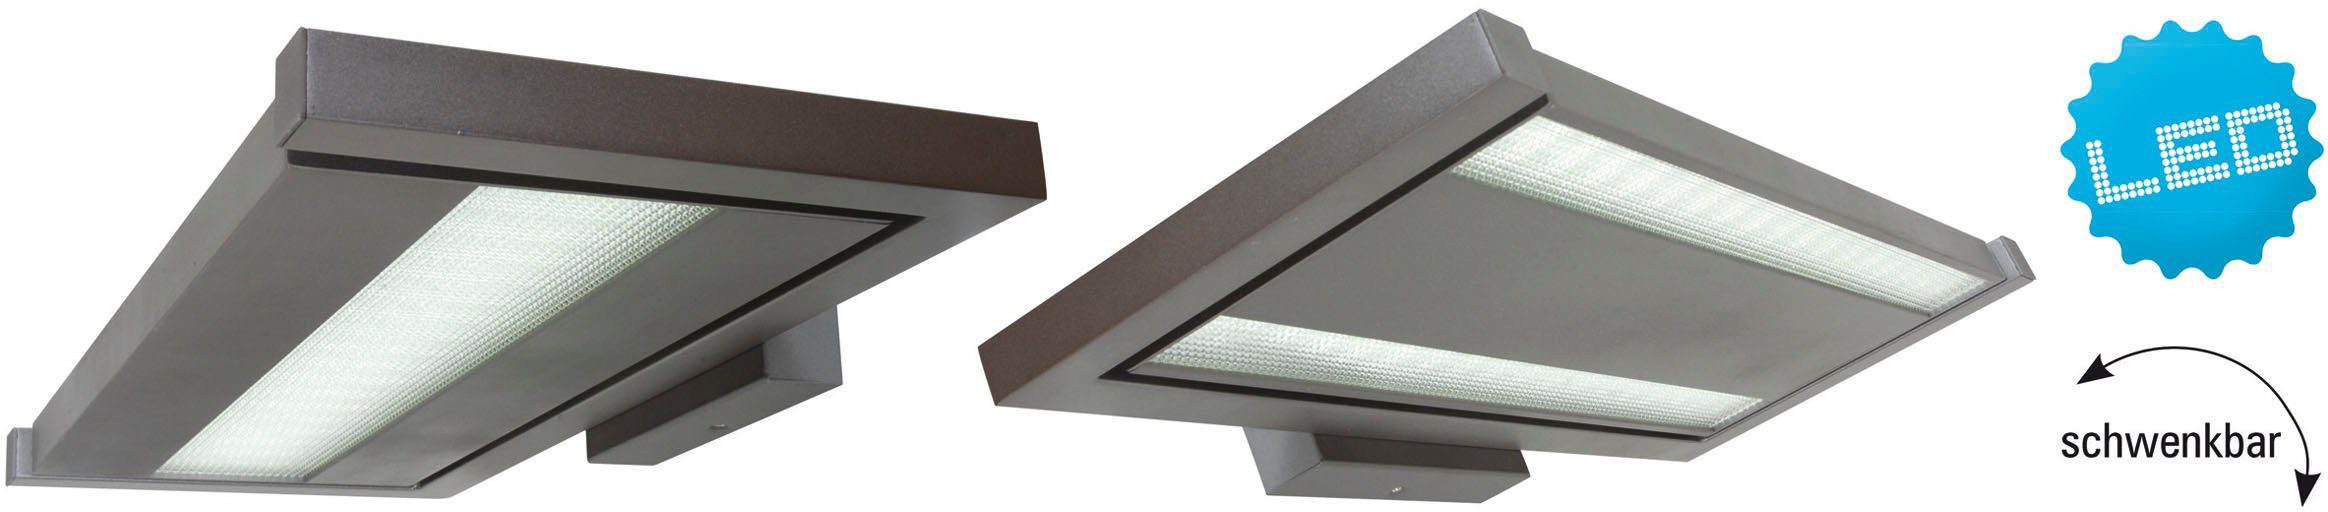 Licht LED grau Bennet, direkt/indirekt näve fest Wandleuchte LED integriert, Büro/Arbeitszimmer Aluguss Neutralweiß, schwenkbar